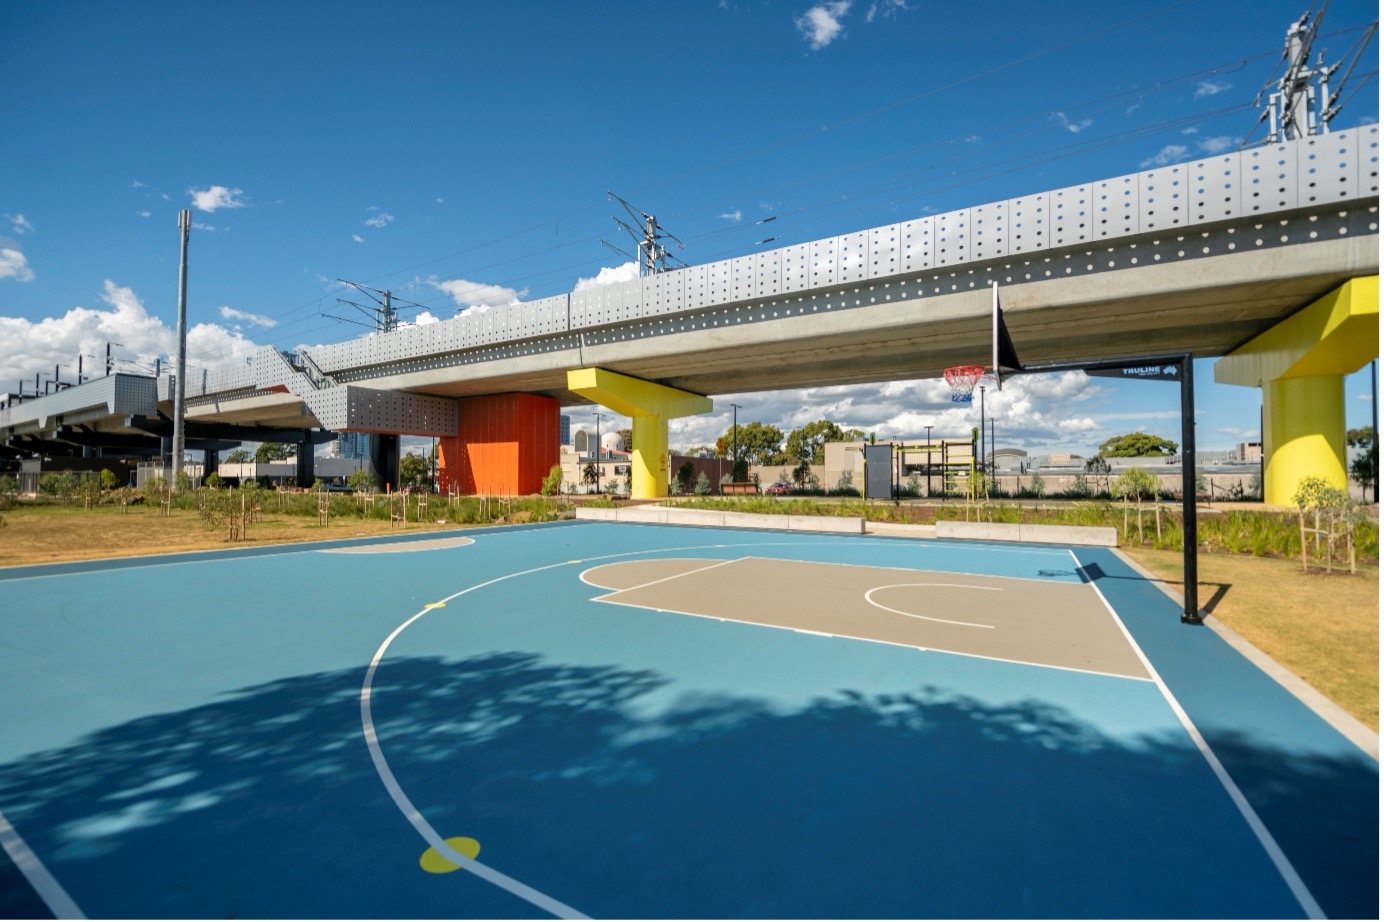 New recreation area in Coburg